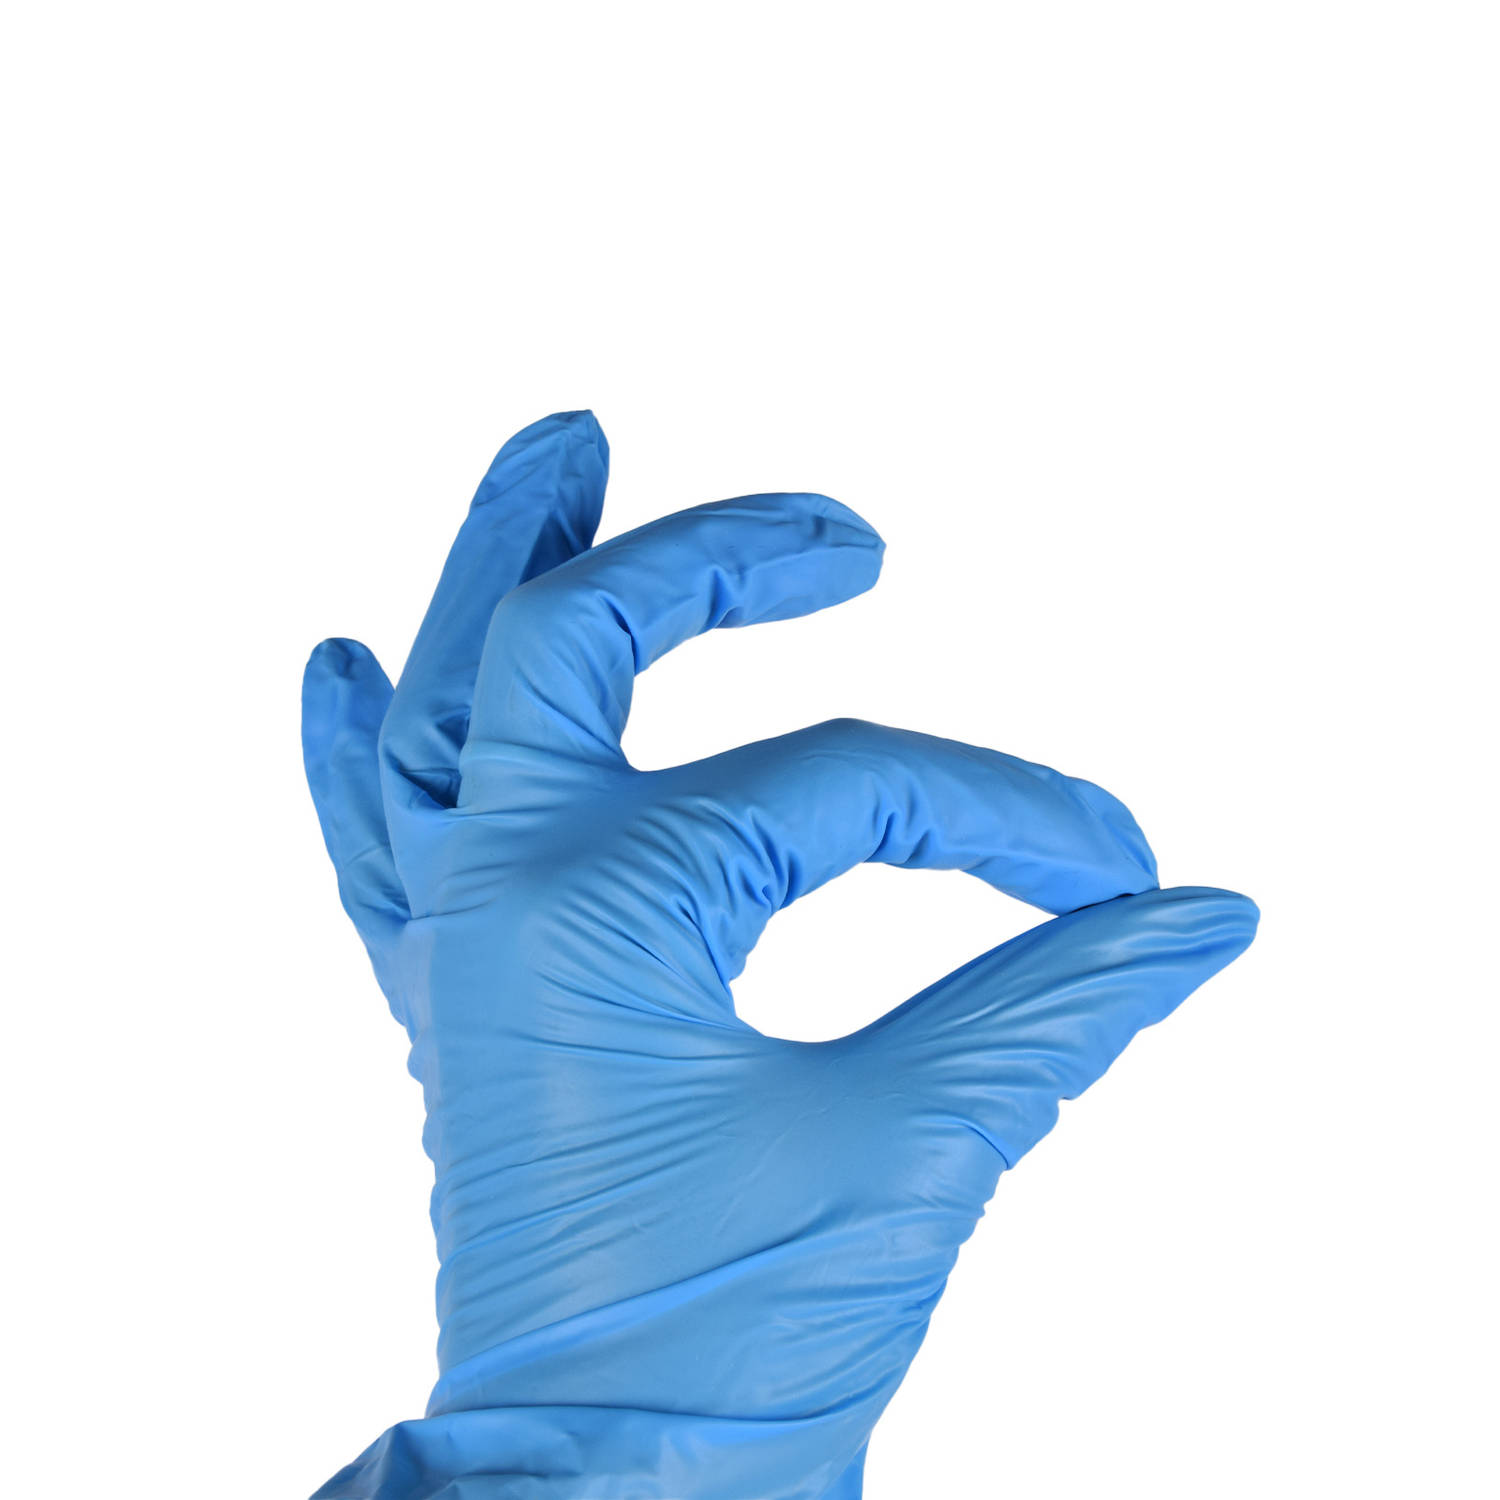 Nitra Force XL Huishoudhandschoenen | 100 Stuks in Blauwe | Nitril Wegwerp Handschoenen | Latexvrij en Poedervrij voor Medisch en Huishoudelijk Gebruik